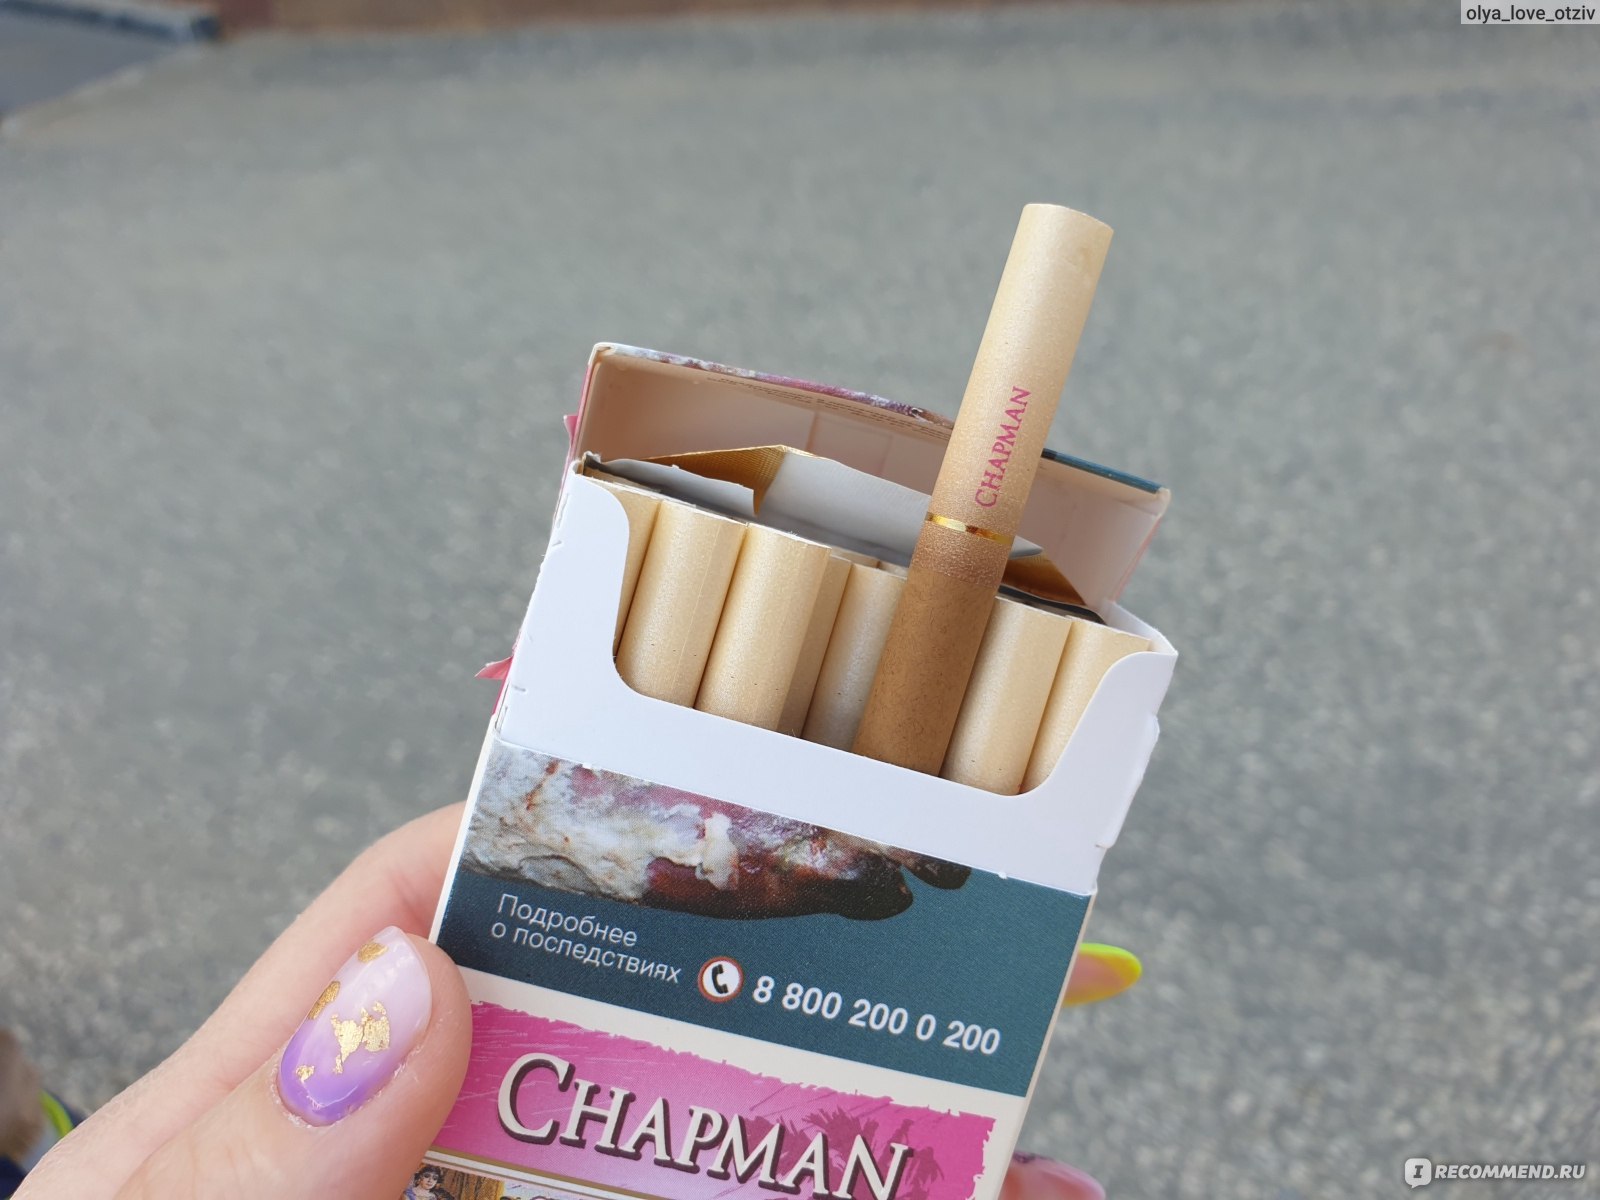 Сигареты Chapman Блю